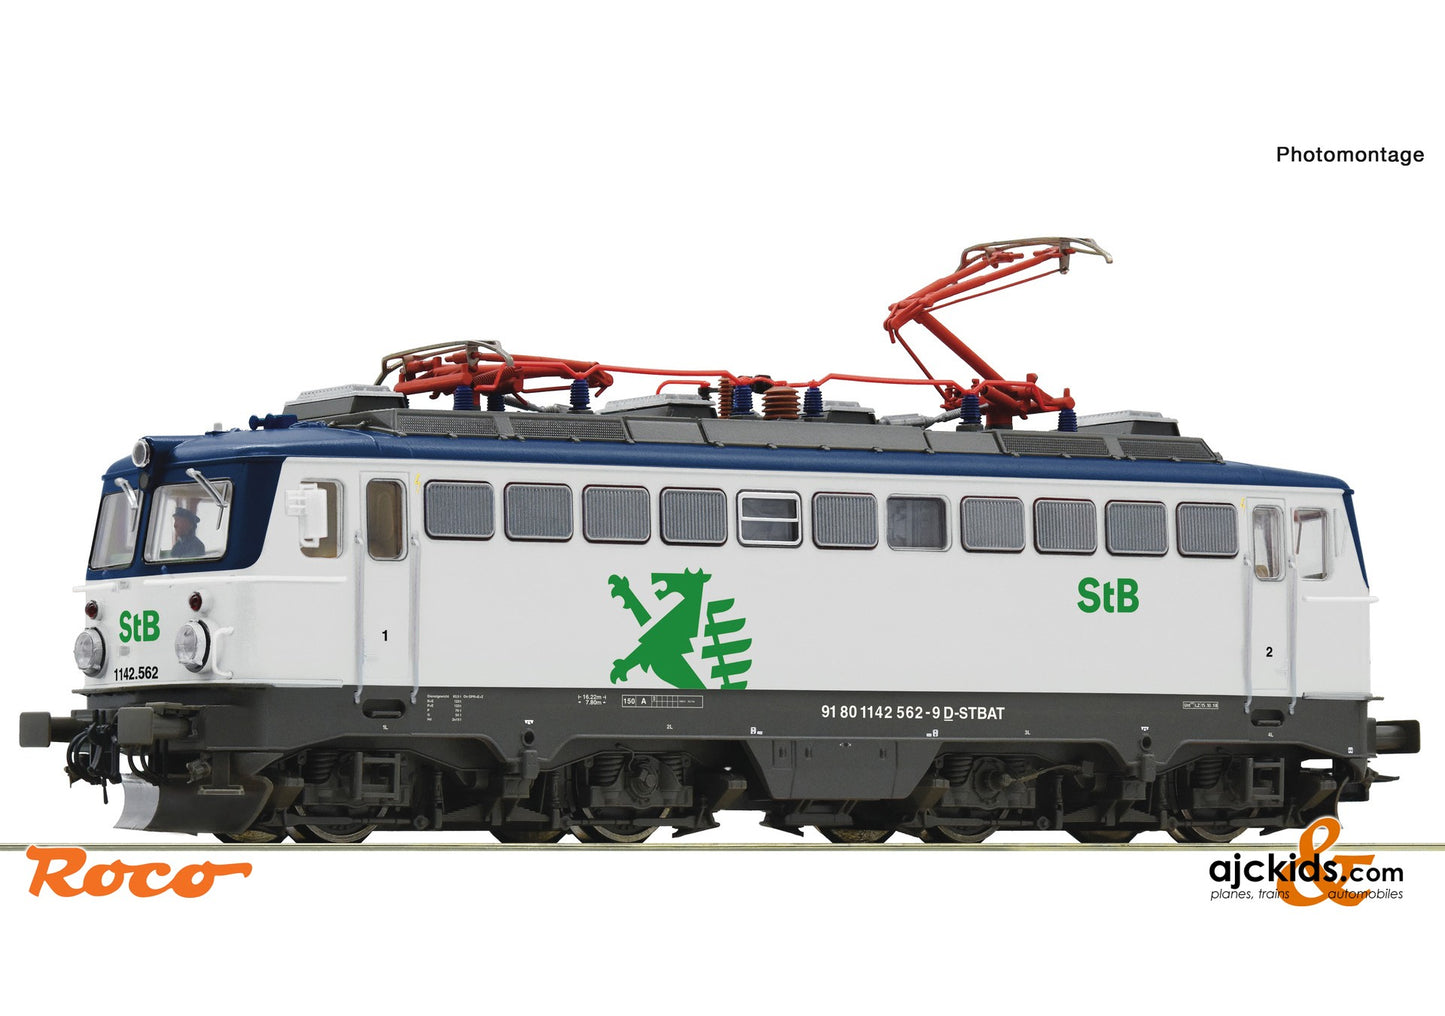 Roco 70602 -Electric locomotive 1142 562-9, StB